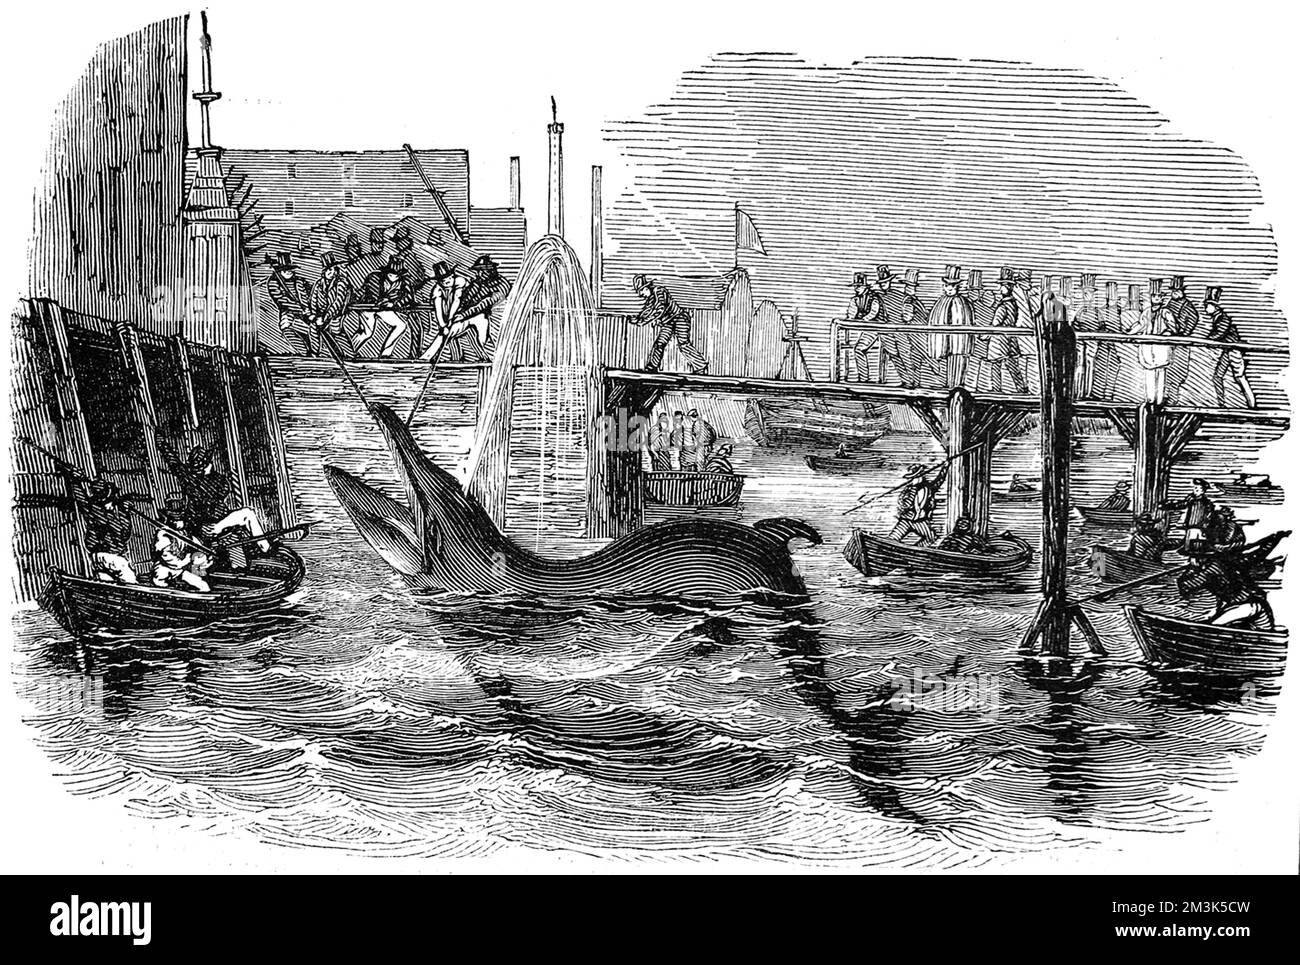 15 piedi, 2 tonnellate, balena catturata al molo di Deptford, Londra, nel 1842. Questa balena era stata nuotata lungo il Tamigi quando era avvistata dagli uomini d'acqua sul molo. Poi si posarono dopo la balena nella loro barca a remi e la arpoonarono, prima di trascinarla di nuovo al molo. 1842 Foto Stock